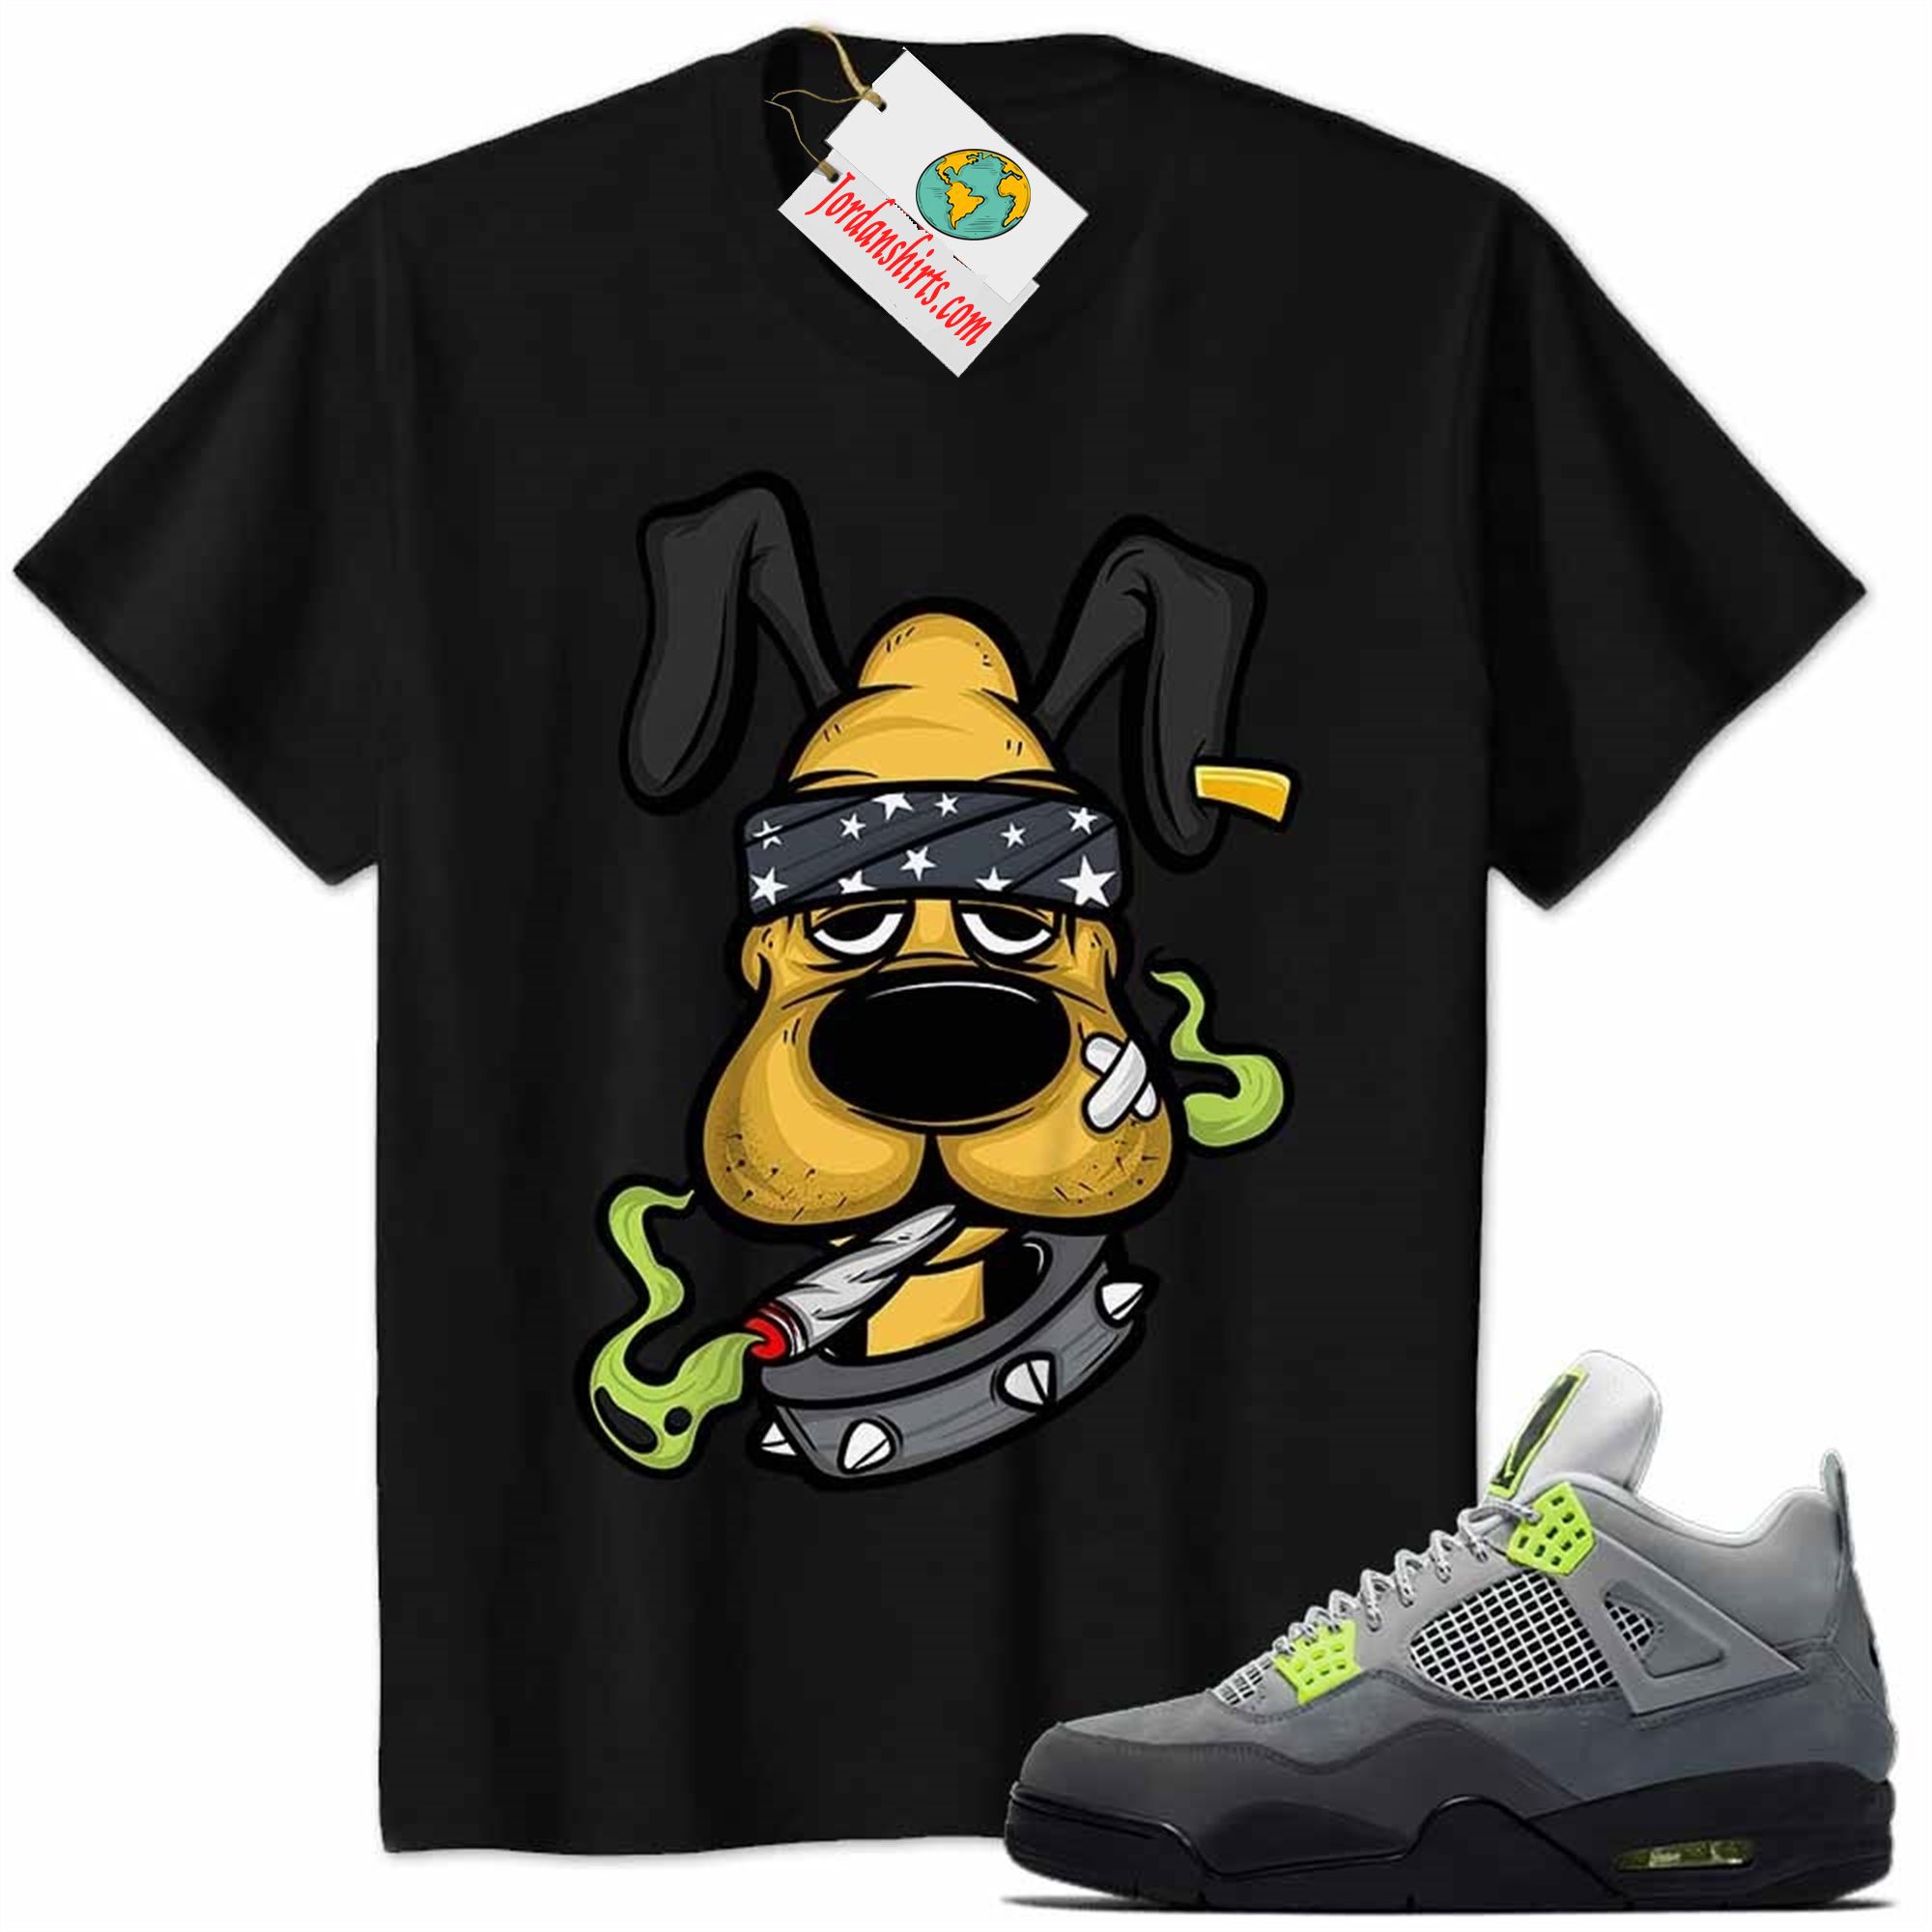 Jordan 4 Shirt, Gangster Pluto Smoke Weed Black Air Jordan 4 Neon 95 4s Plus Size Up To 5xl